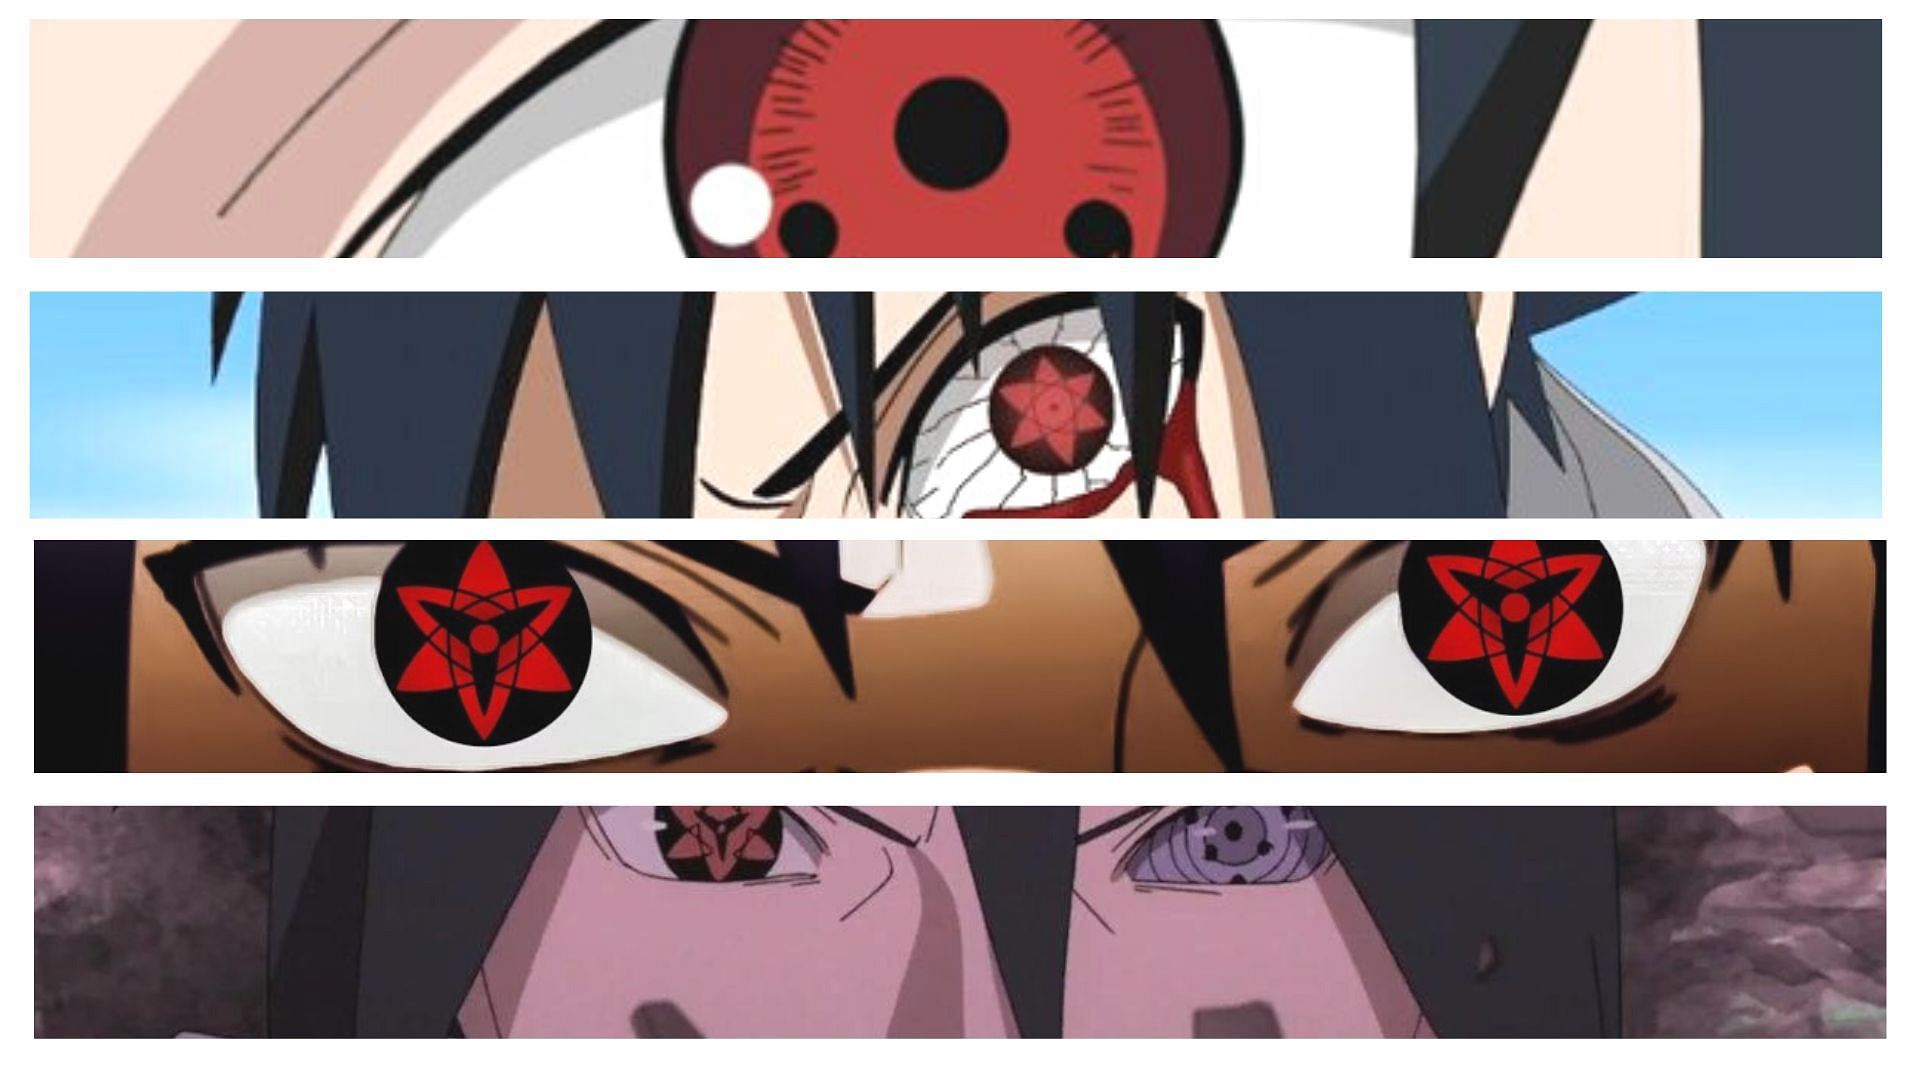 Naruto vs Sasuke: Sharingan